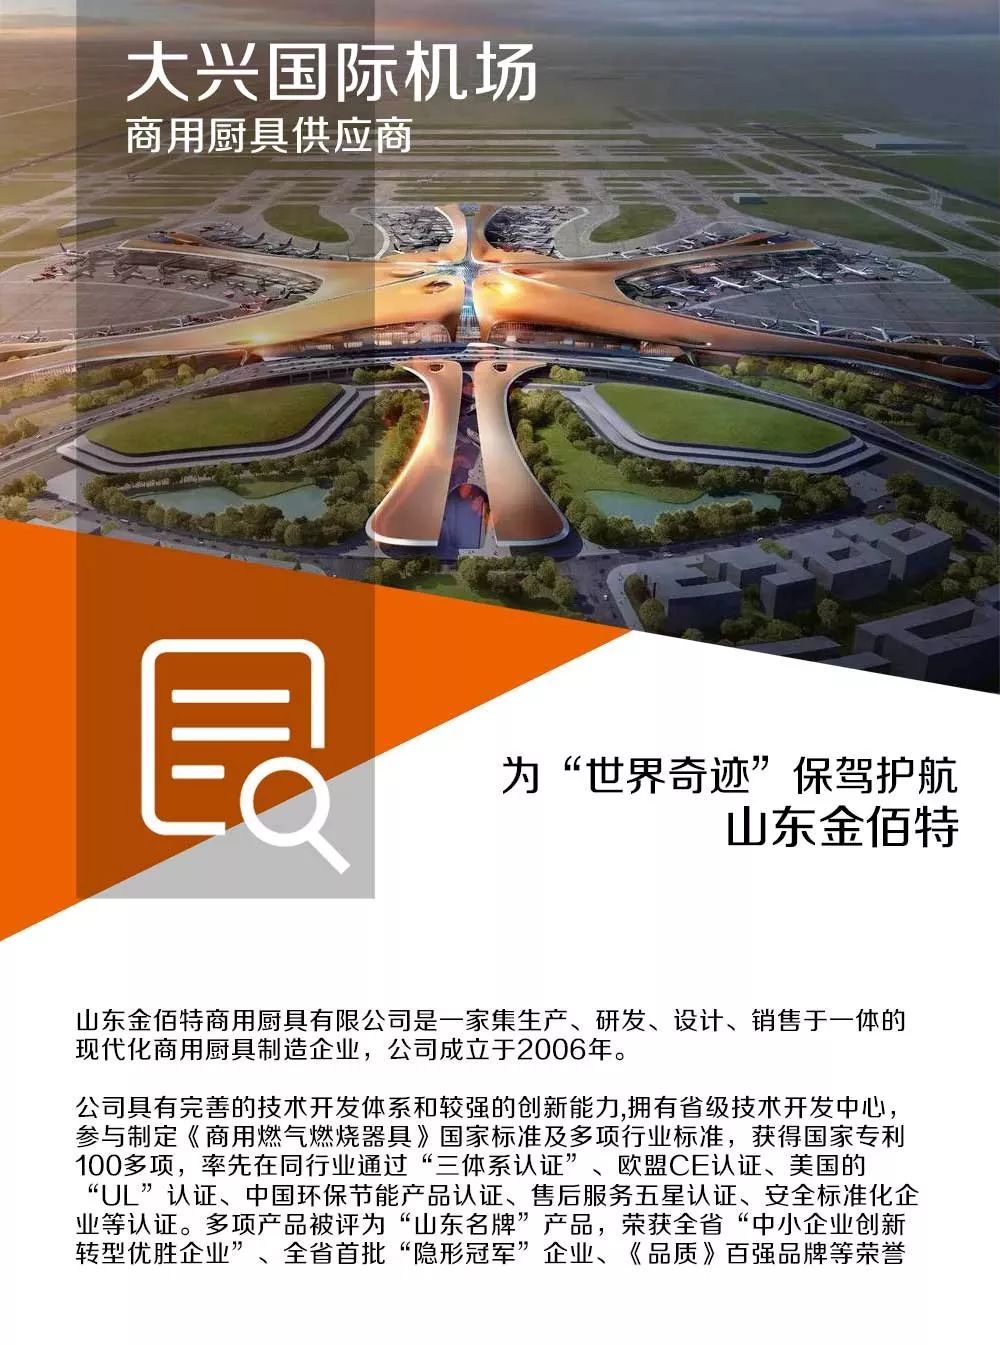 北京大兴国际机场是京津冀协同发展的标志性工程,是国家发展新的